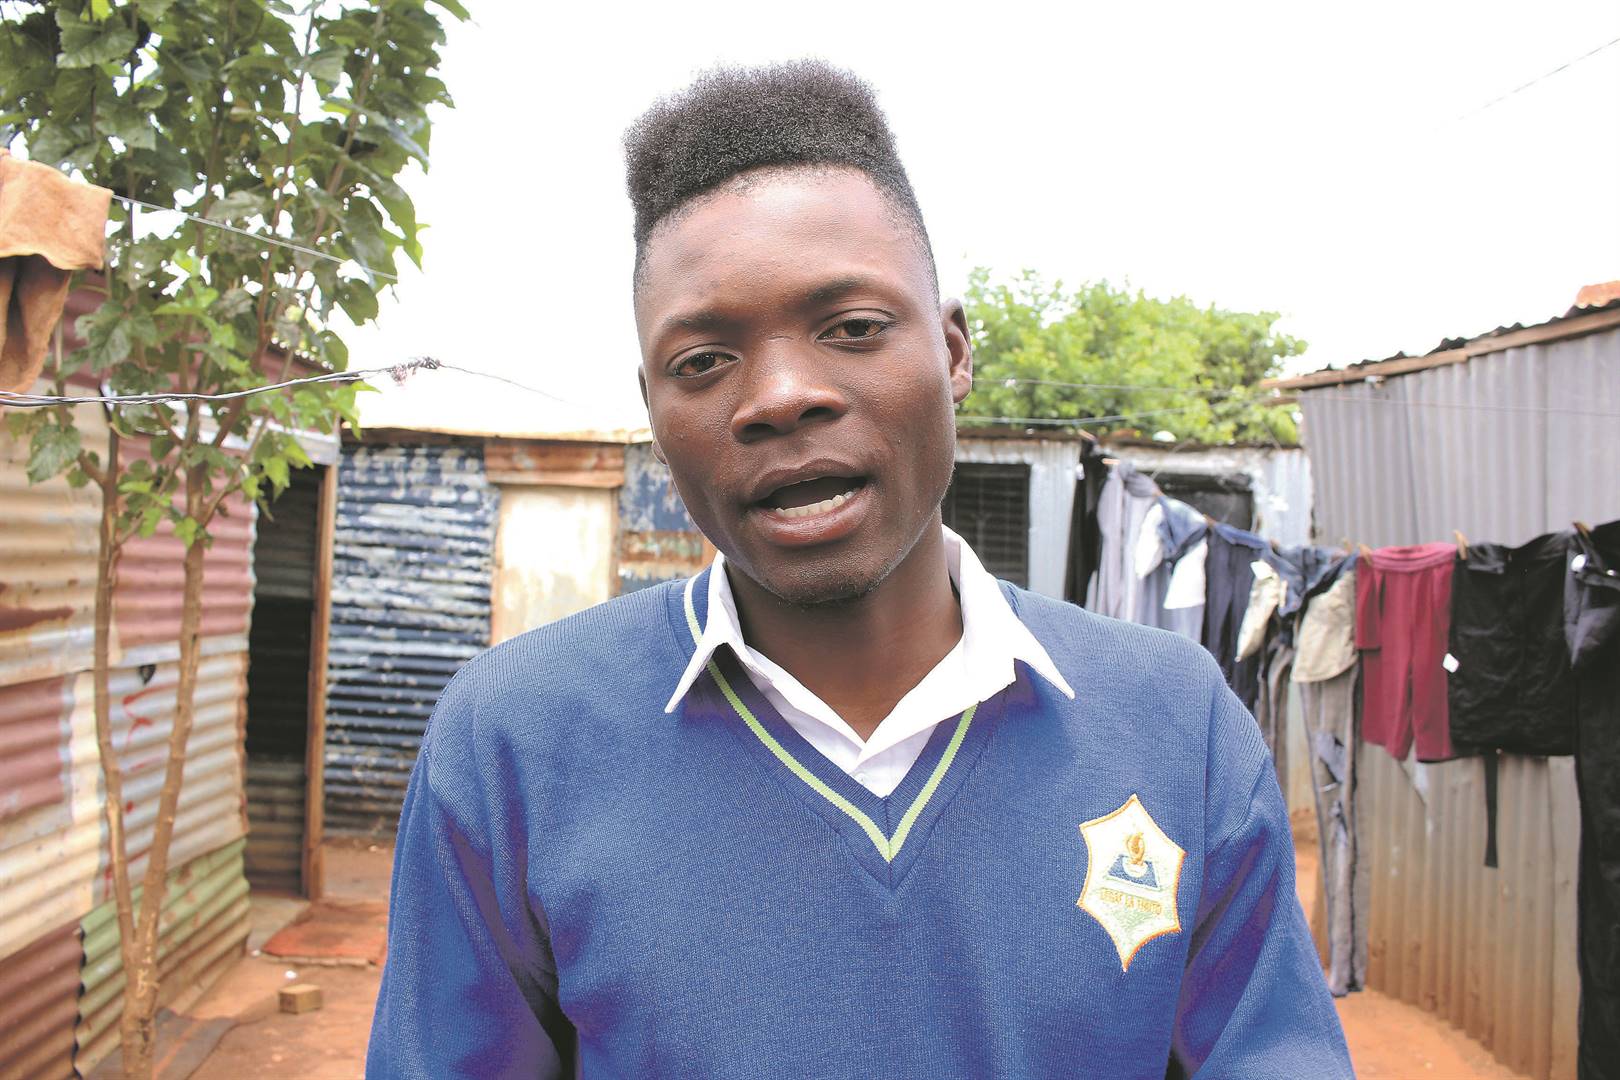 Ronello Tivane (20) said to rewrite the paper is punishment for Grade 12s.